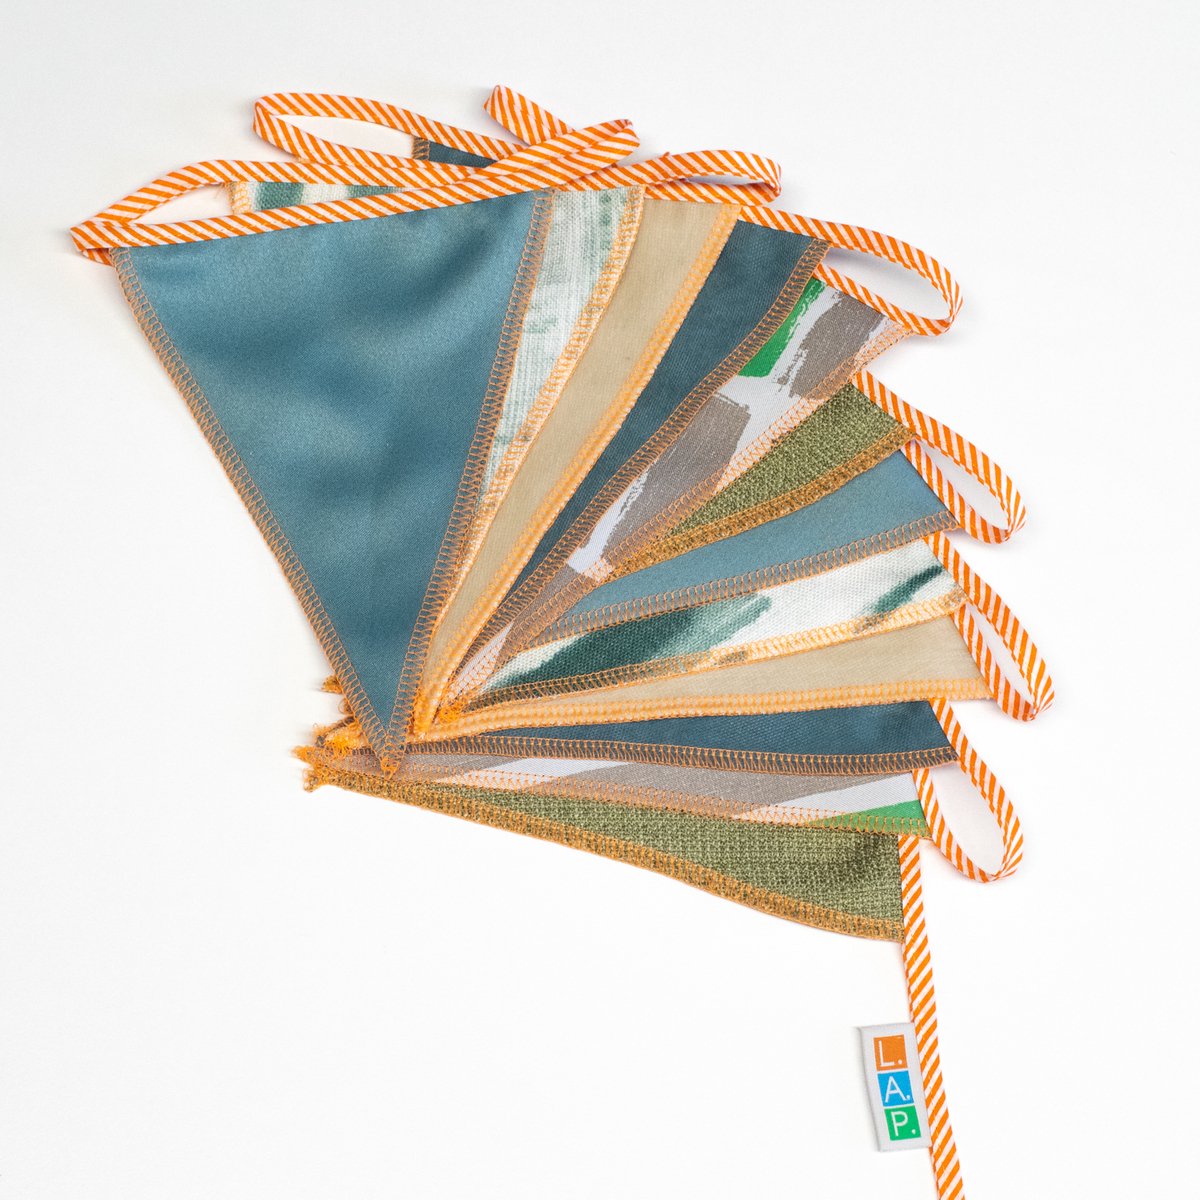 L.A.P. Atelier Vlaggenlijn Waddengevoel - handgemaakte vlaggenlijn van duurzame stof - naturel, groen en blauw - 300 cm